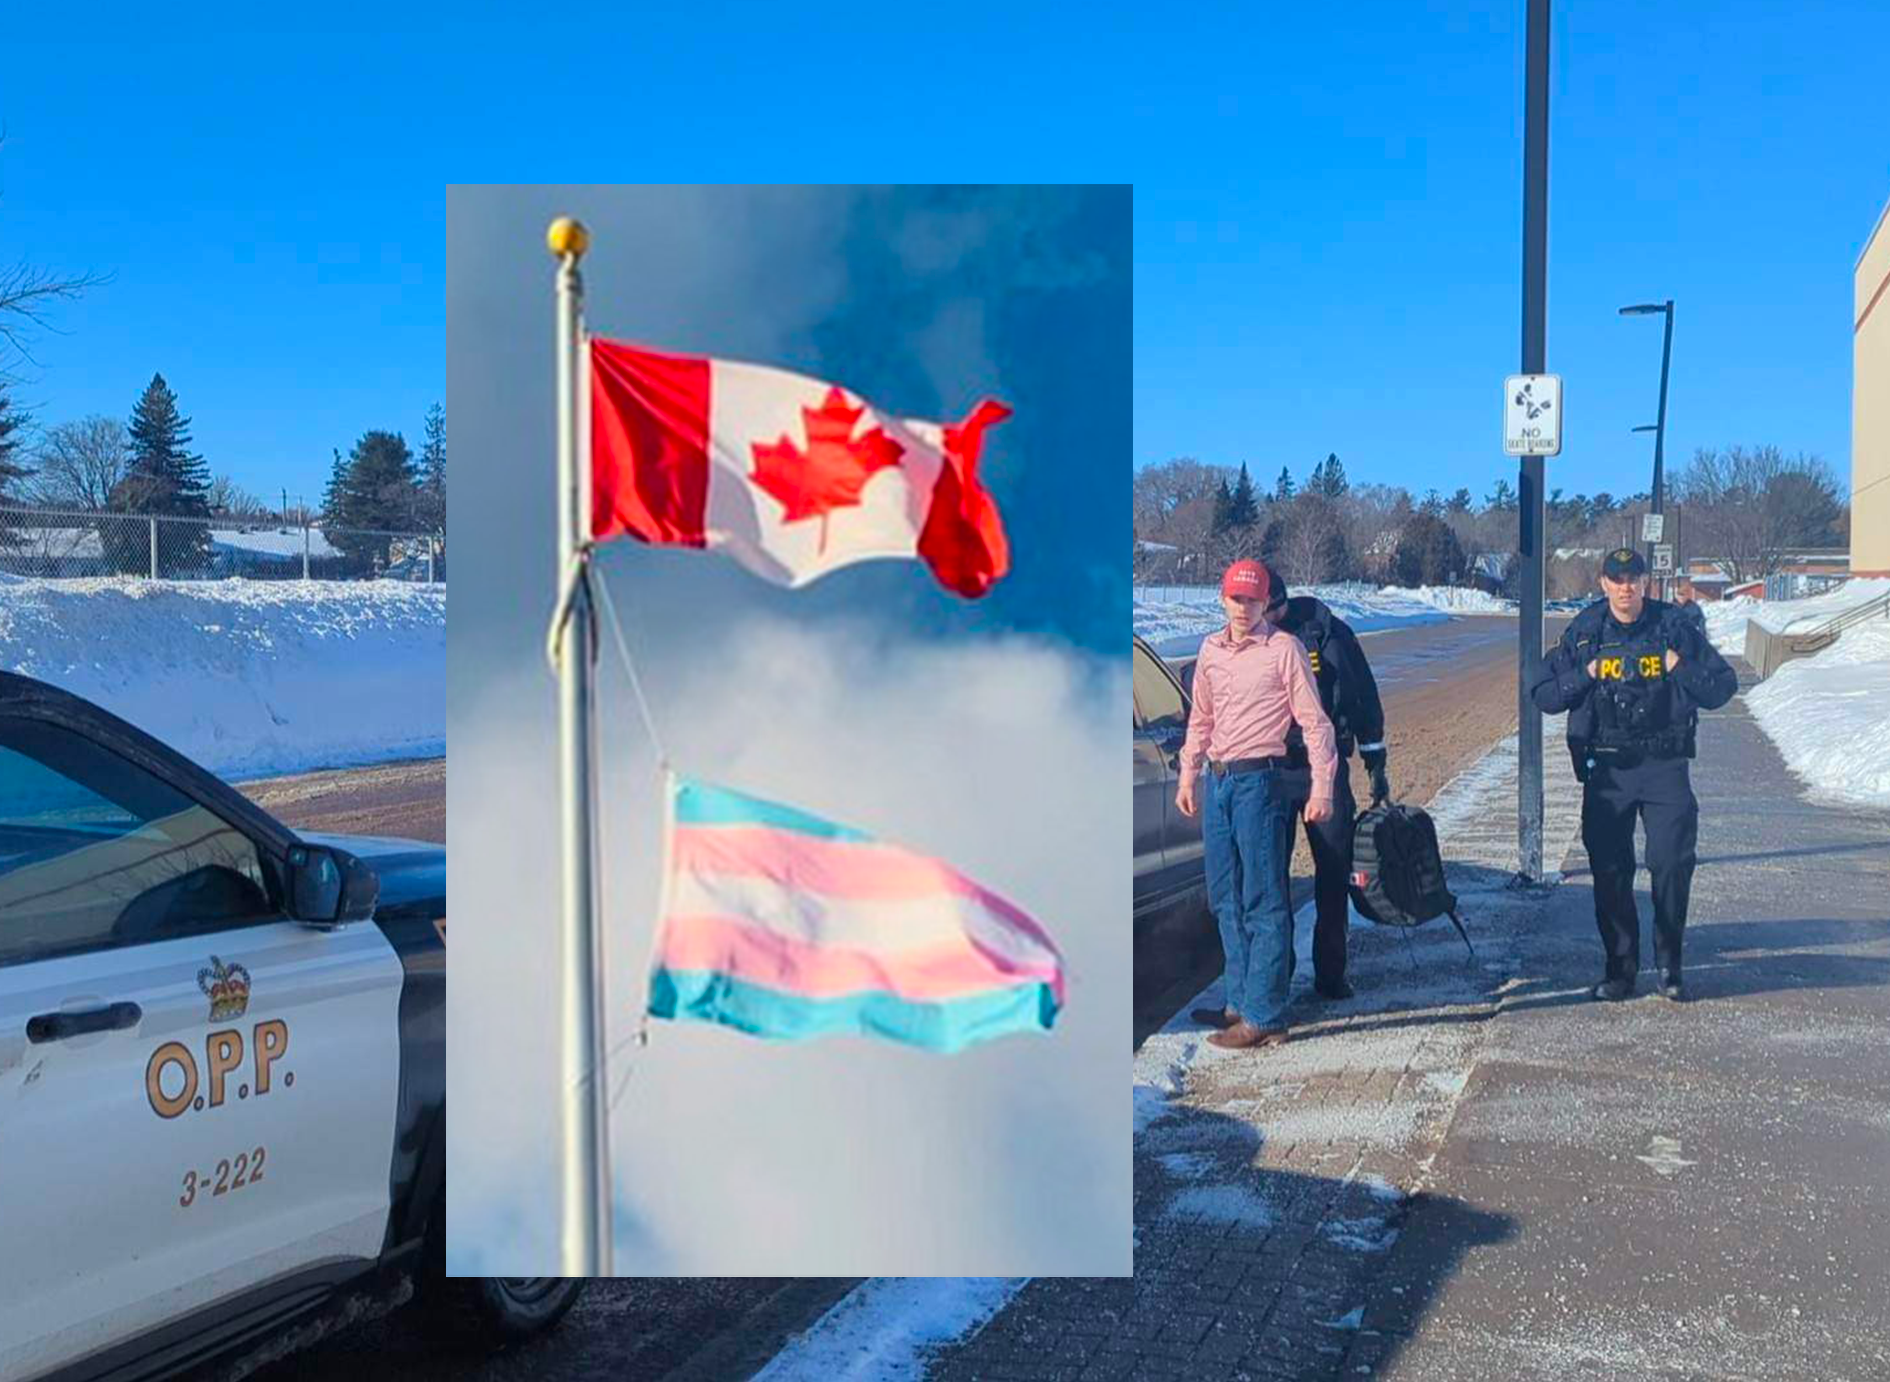 Canada : Un lycéen exclu et arrêté par la police pour avoir affirmé que seuls deux sexes existent.